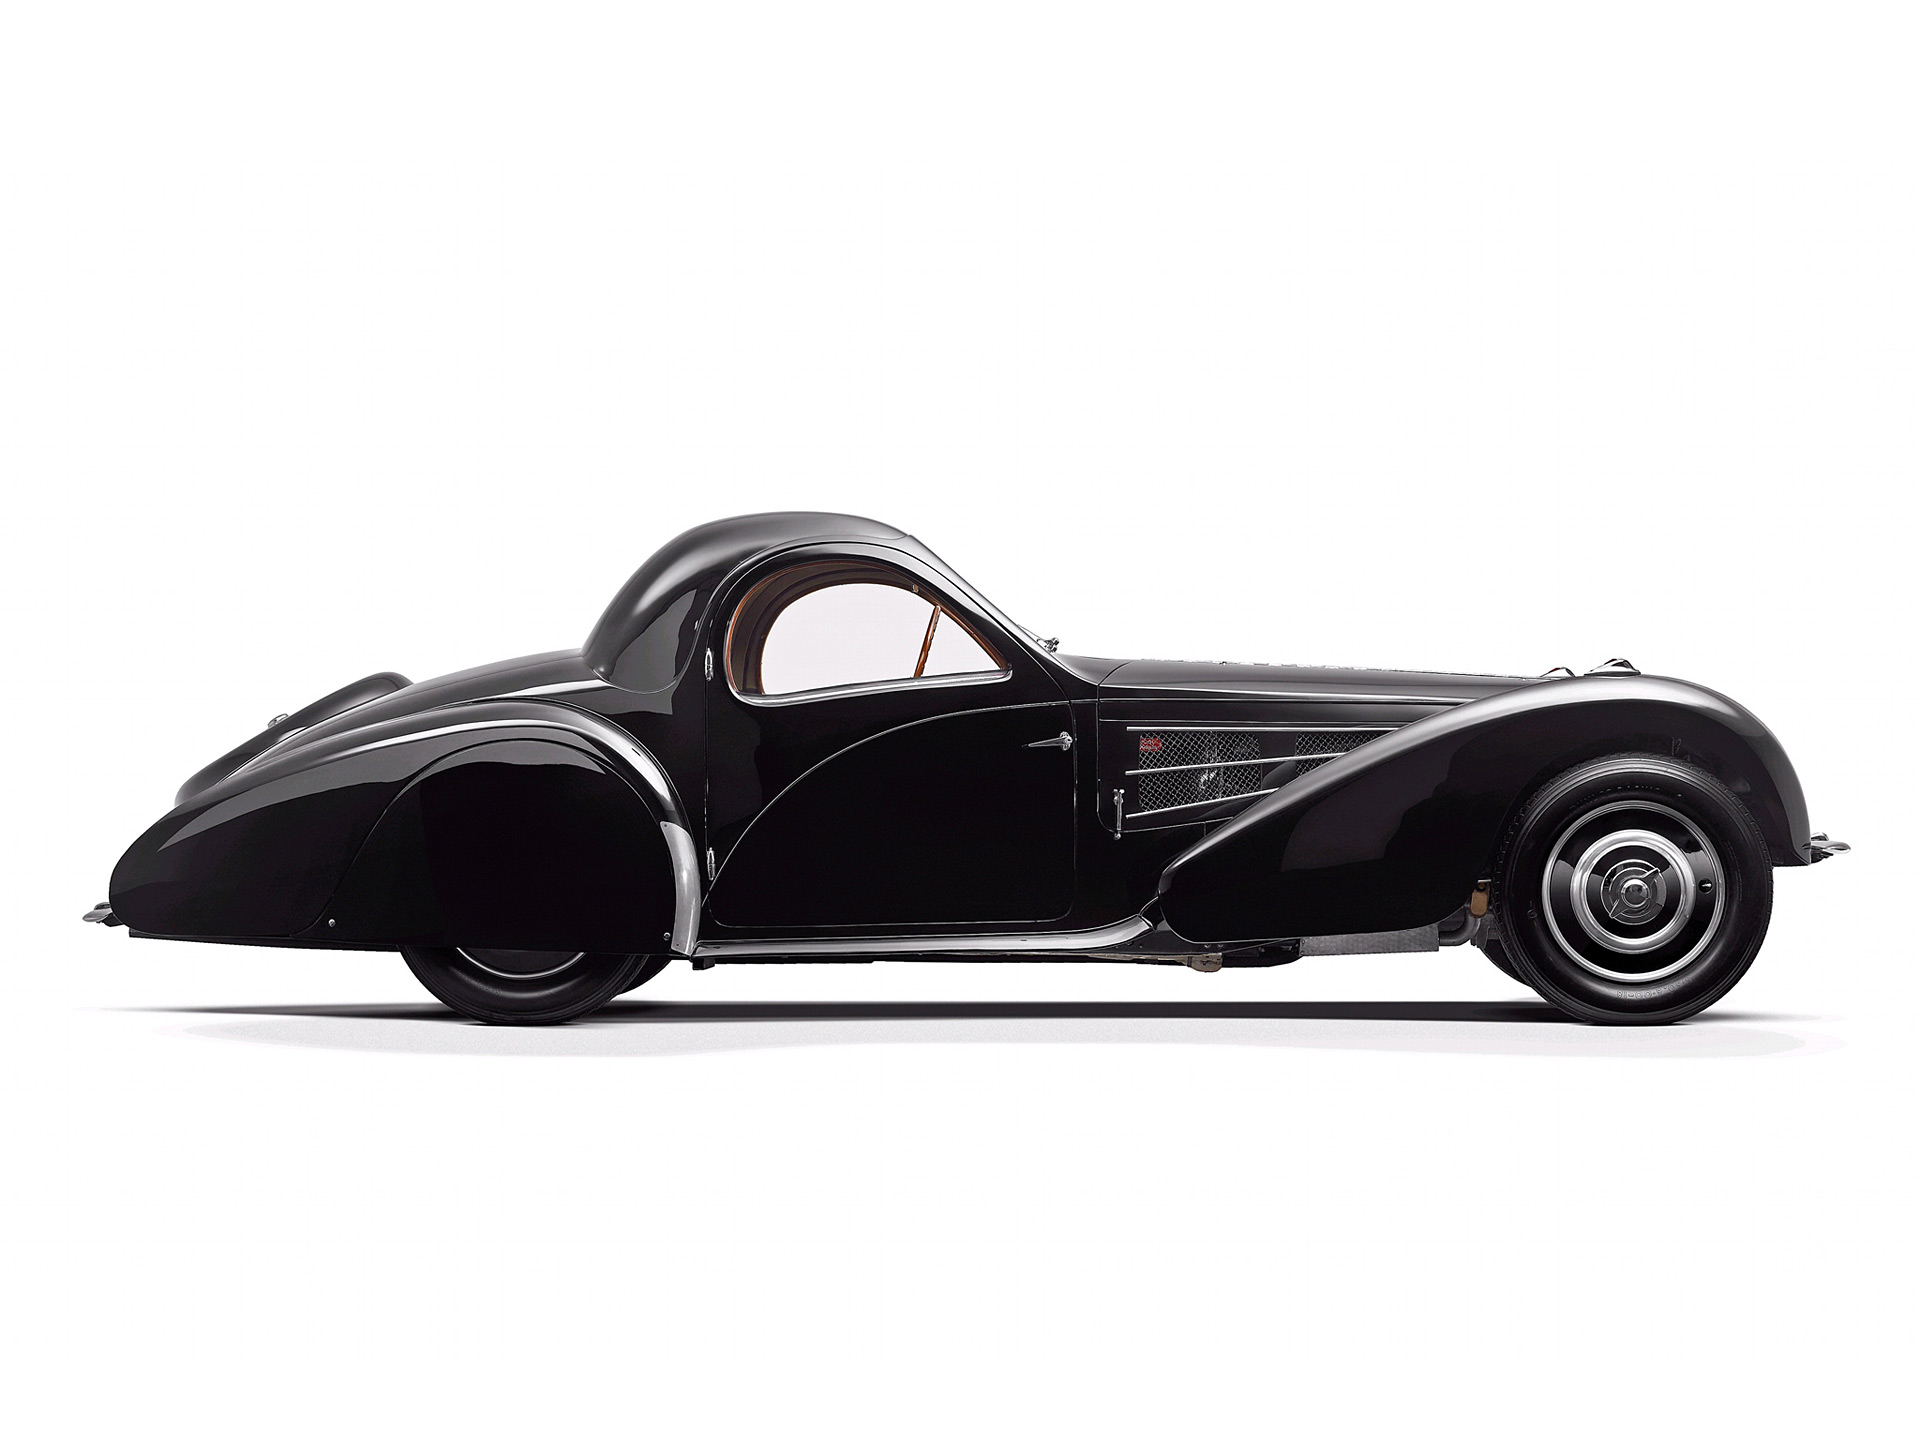  1937 Bugatti Type 57S Coupe Wallpaper.